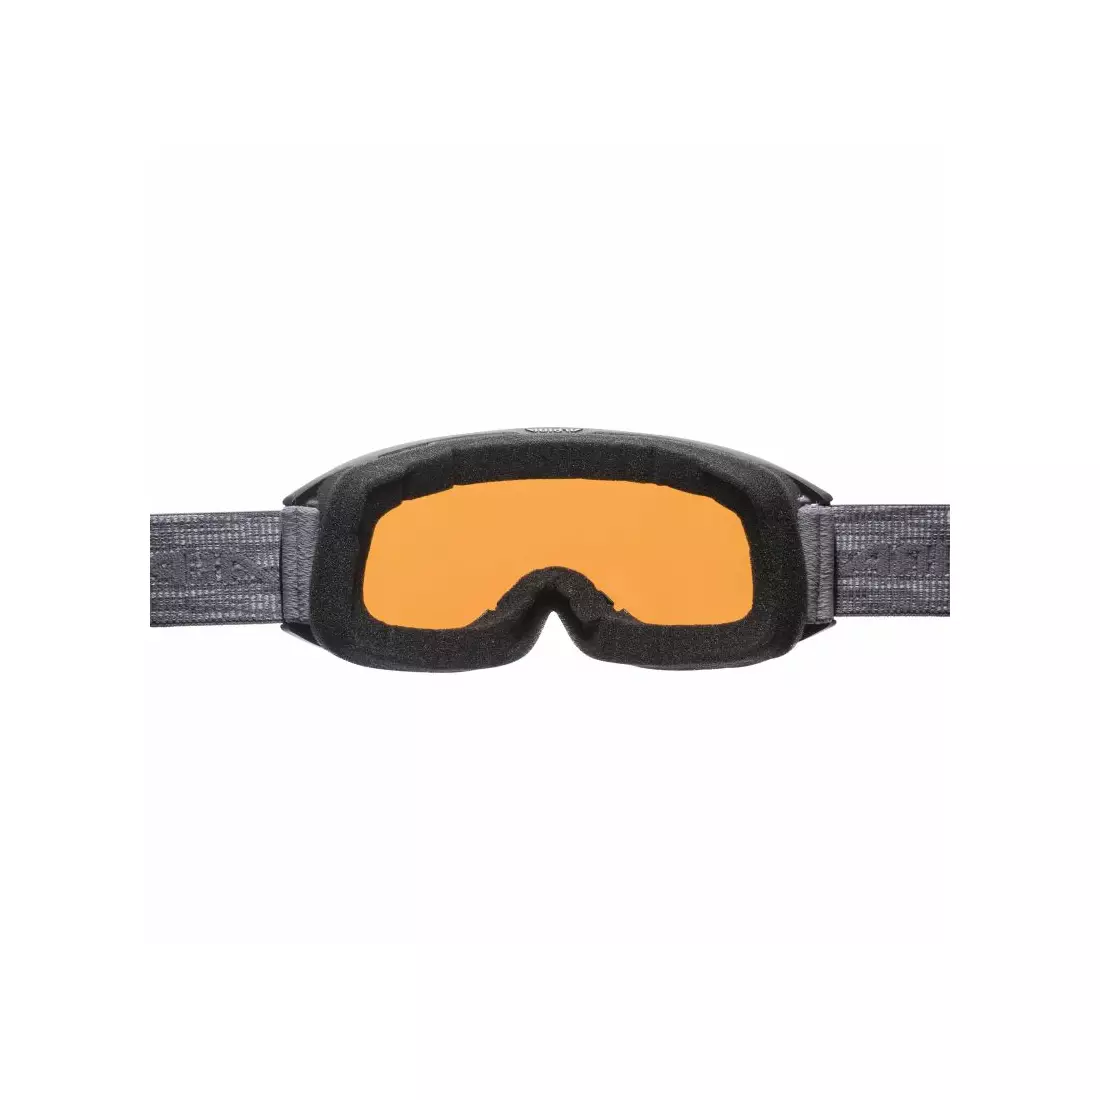 ALPINA lyžiarske/snowboardové okuliare M40 NAKISKA HM čierno-šedé A7280832